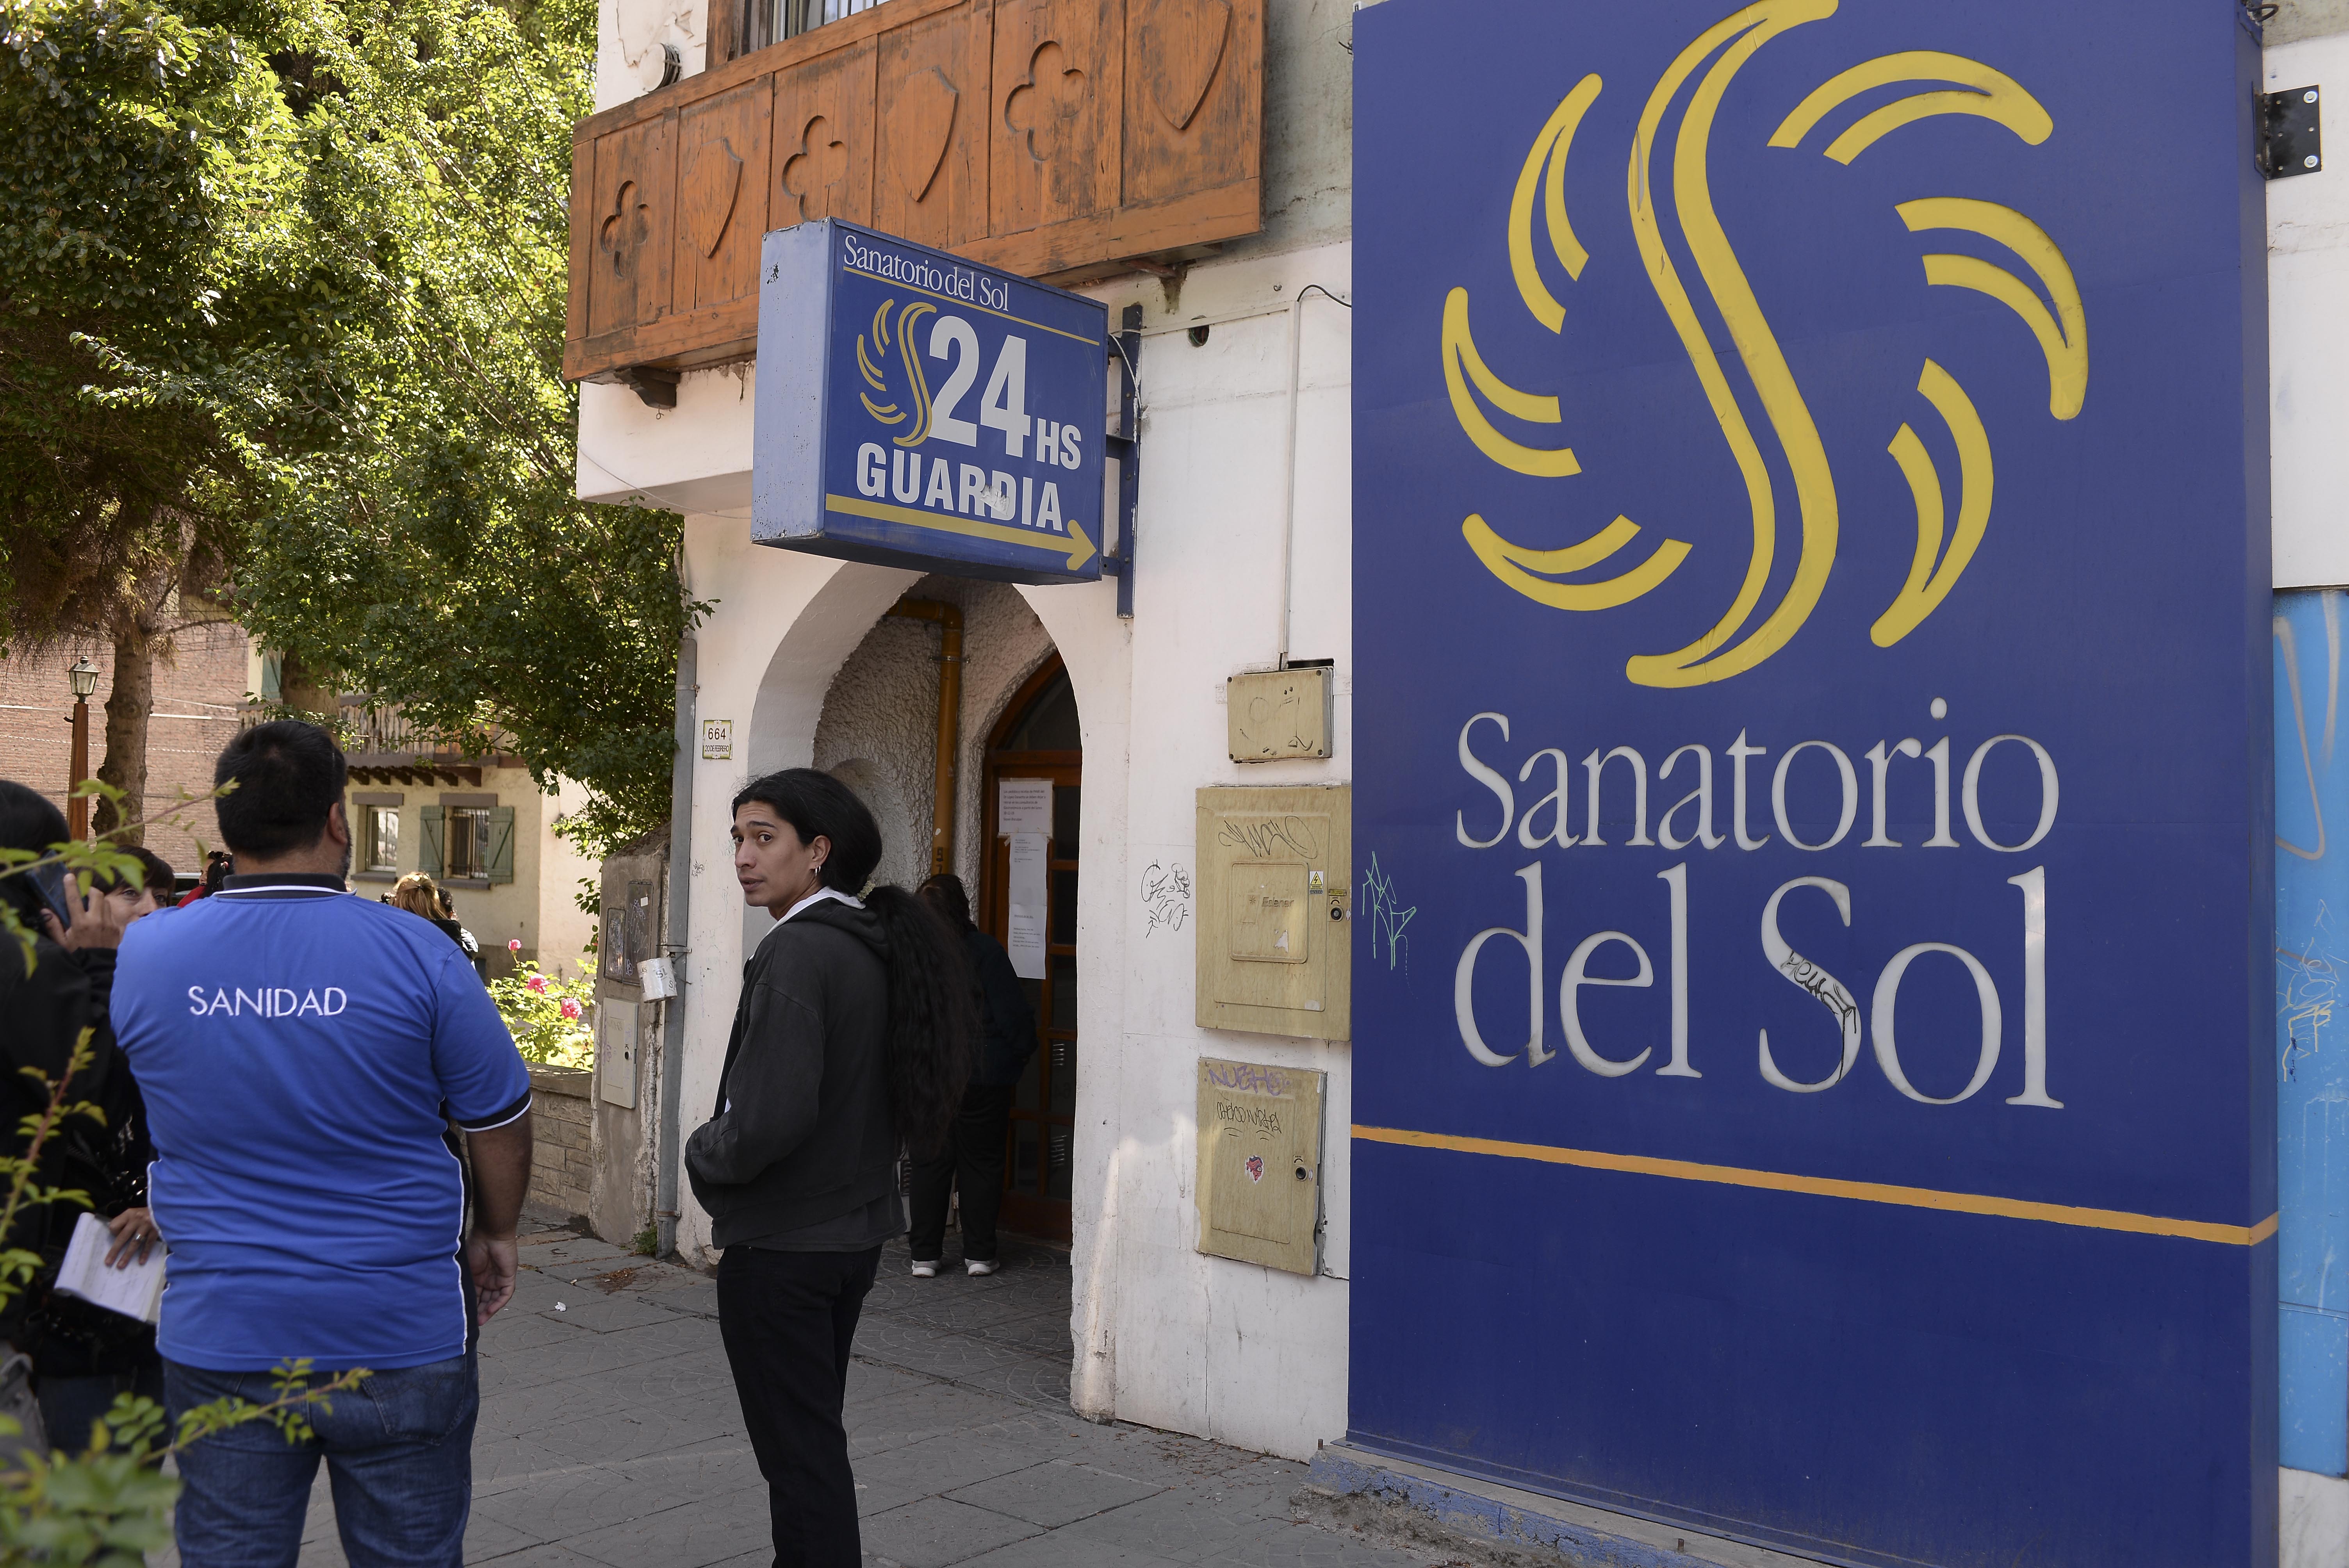 El sanatorio Del Sol tras varios meses en crisis, cesó su actividad de manera sorpresiva. Foto: Alfredo Leiva